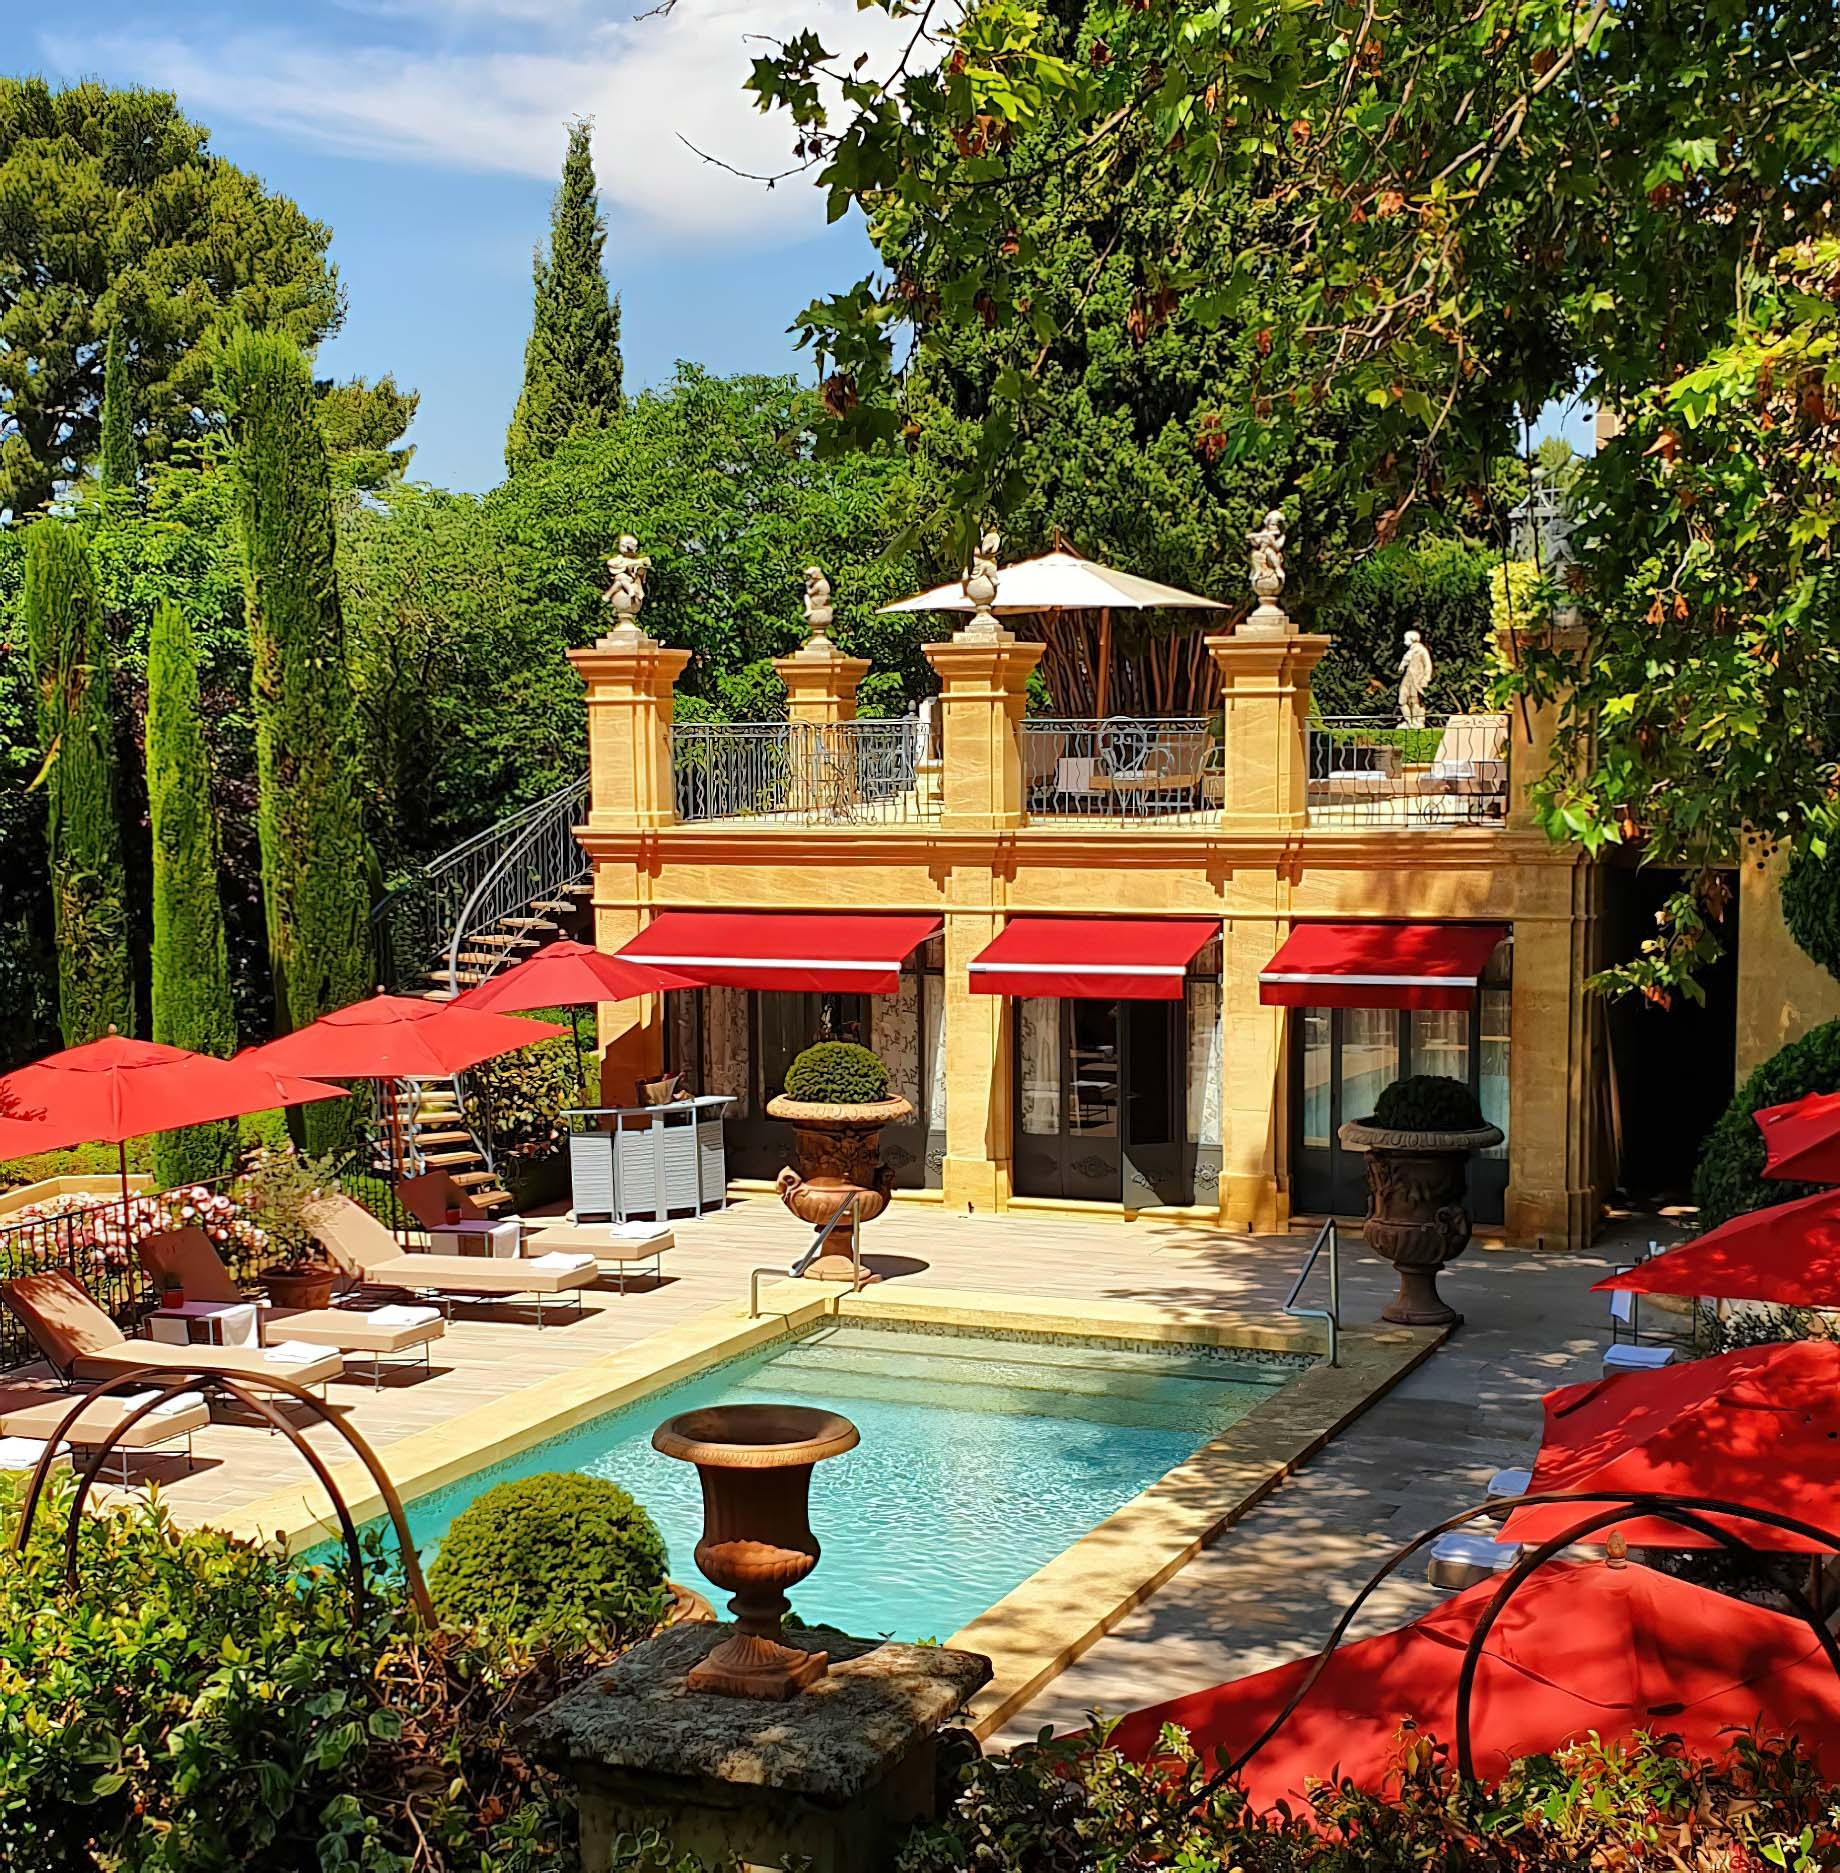 Villa Gallici Relais Châteaux Hotel - Aix-en-Provence, France - Pool Deck and Terrace